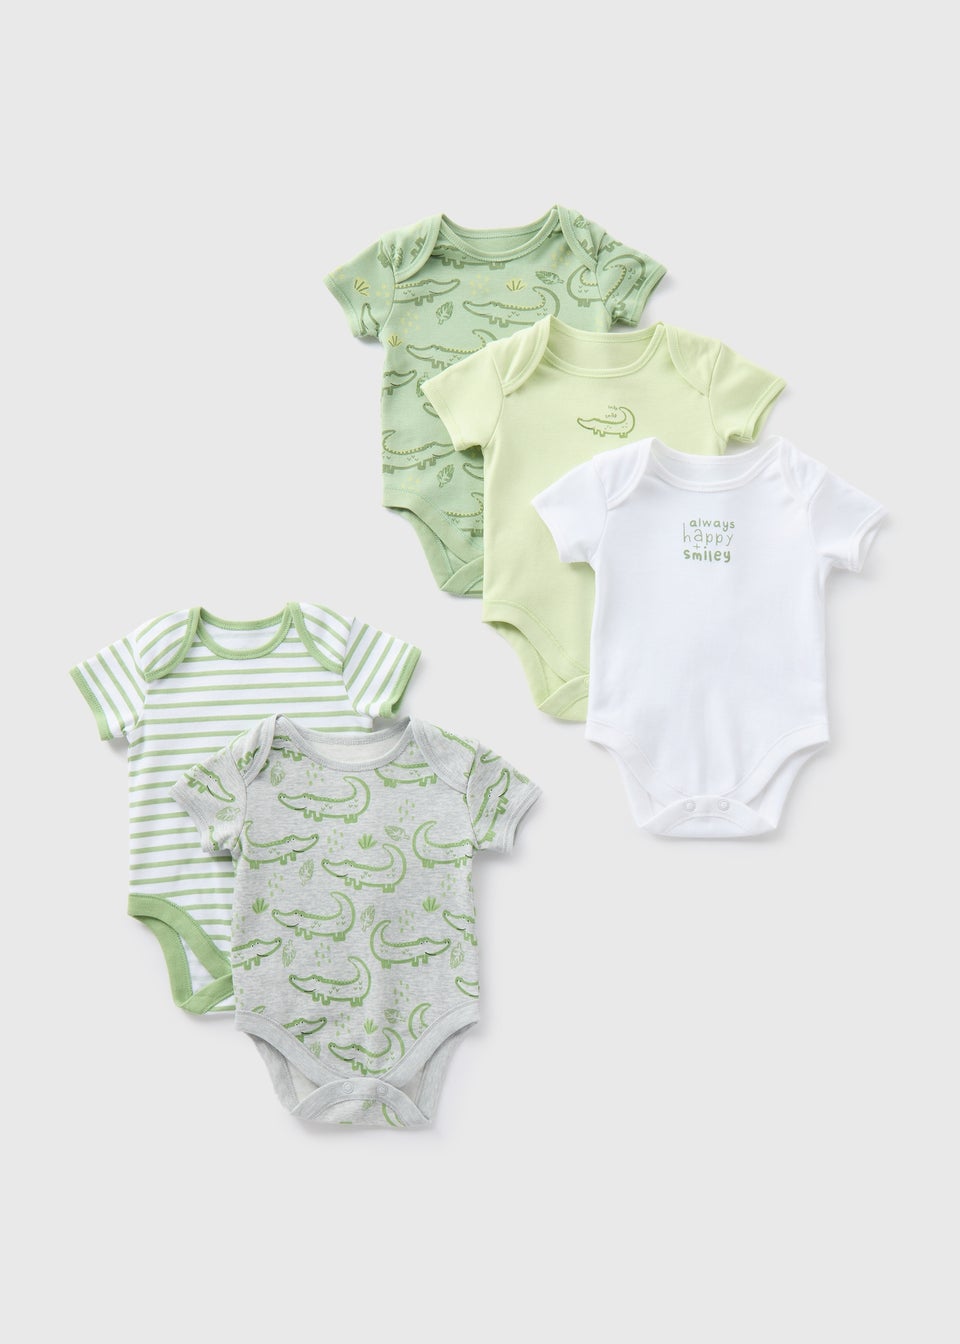 Baby 5 Pack Green Croc Bodysuits (Newborn-23mths)